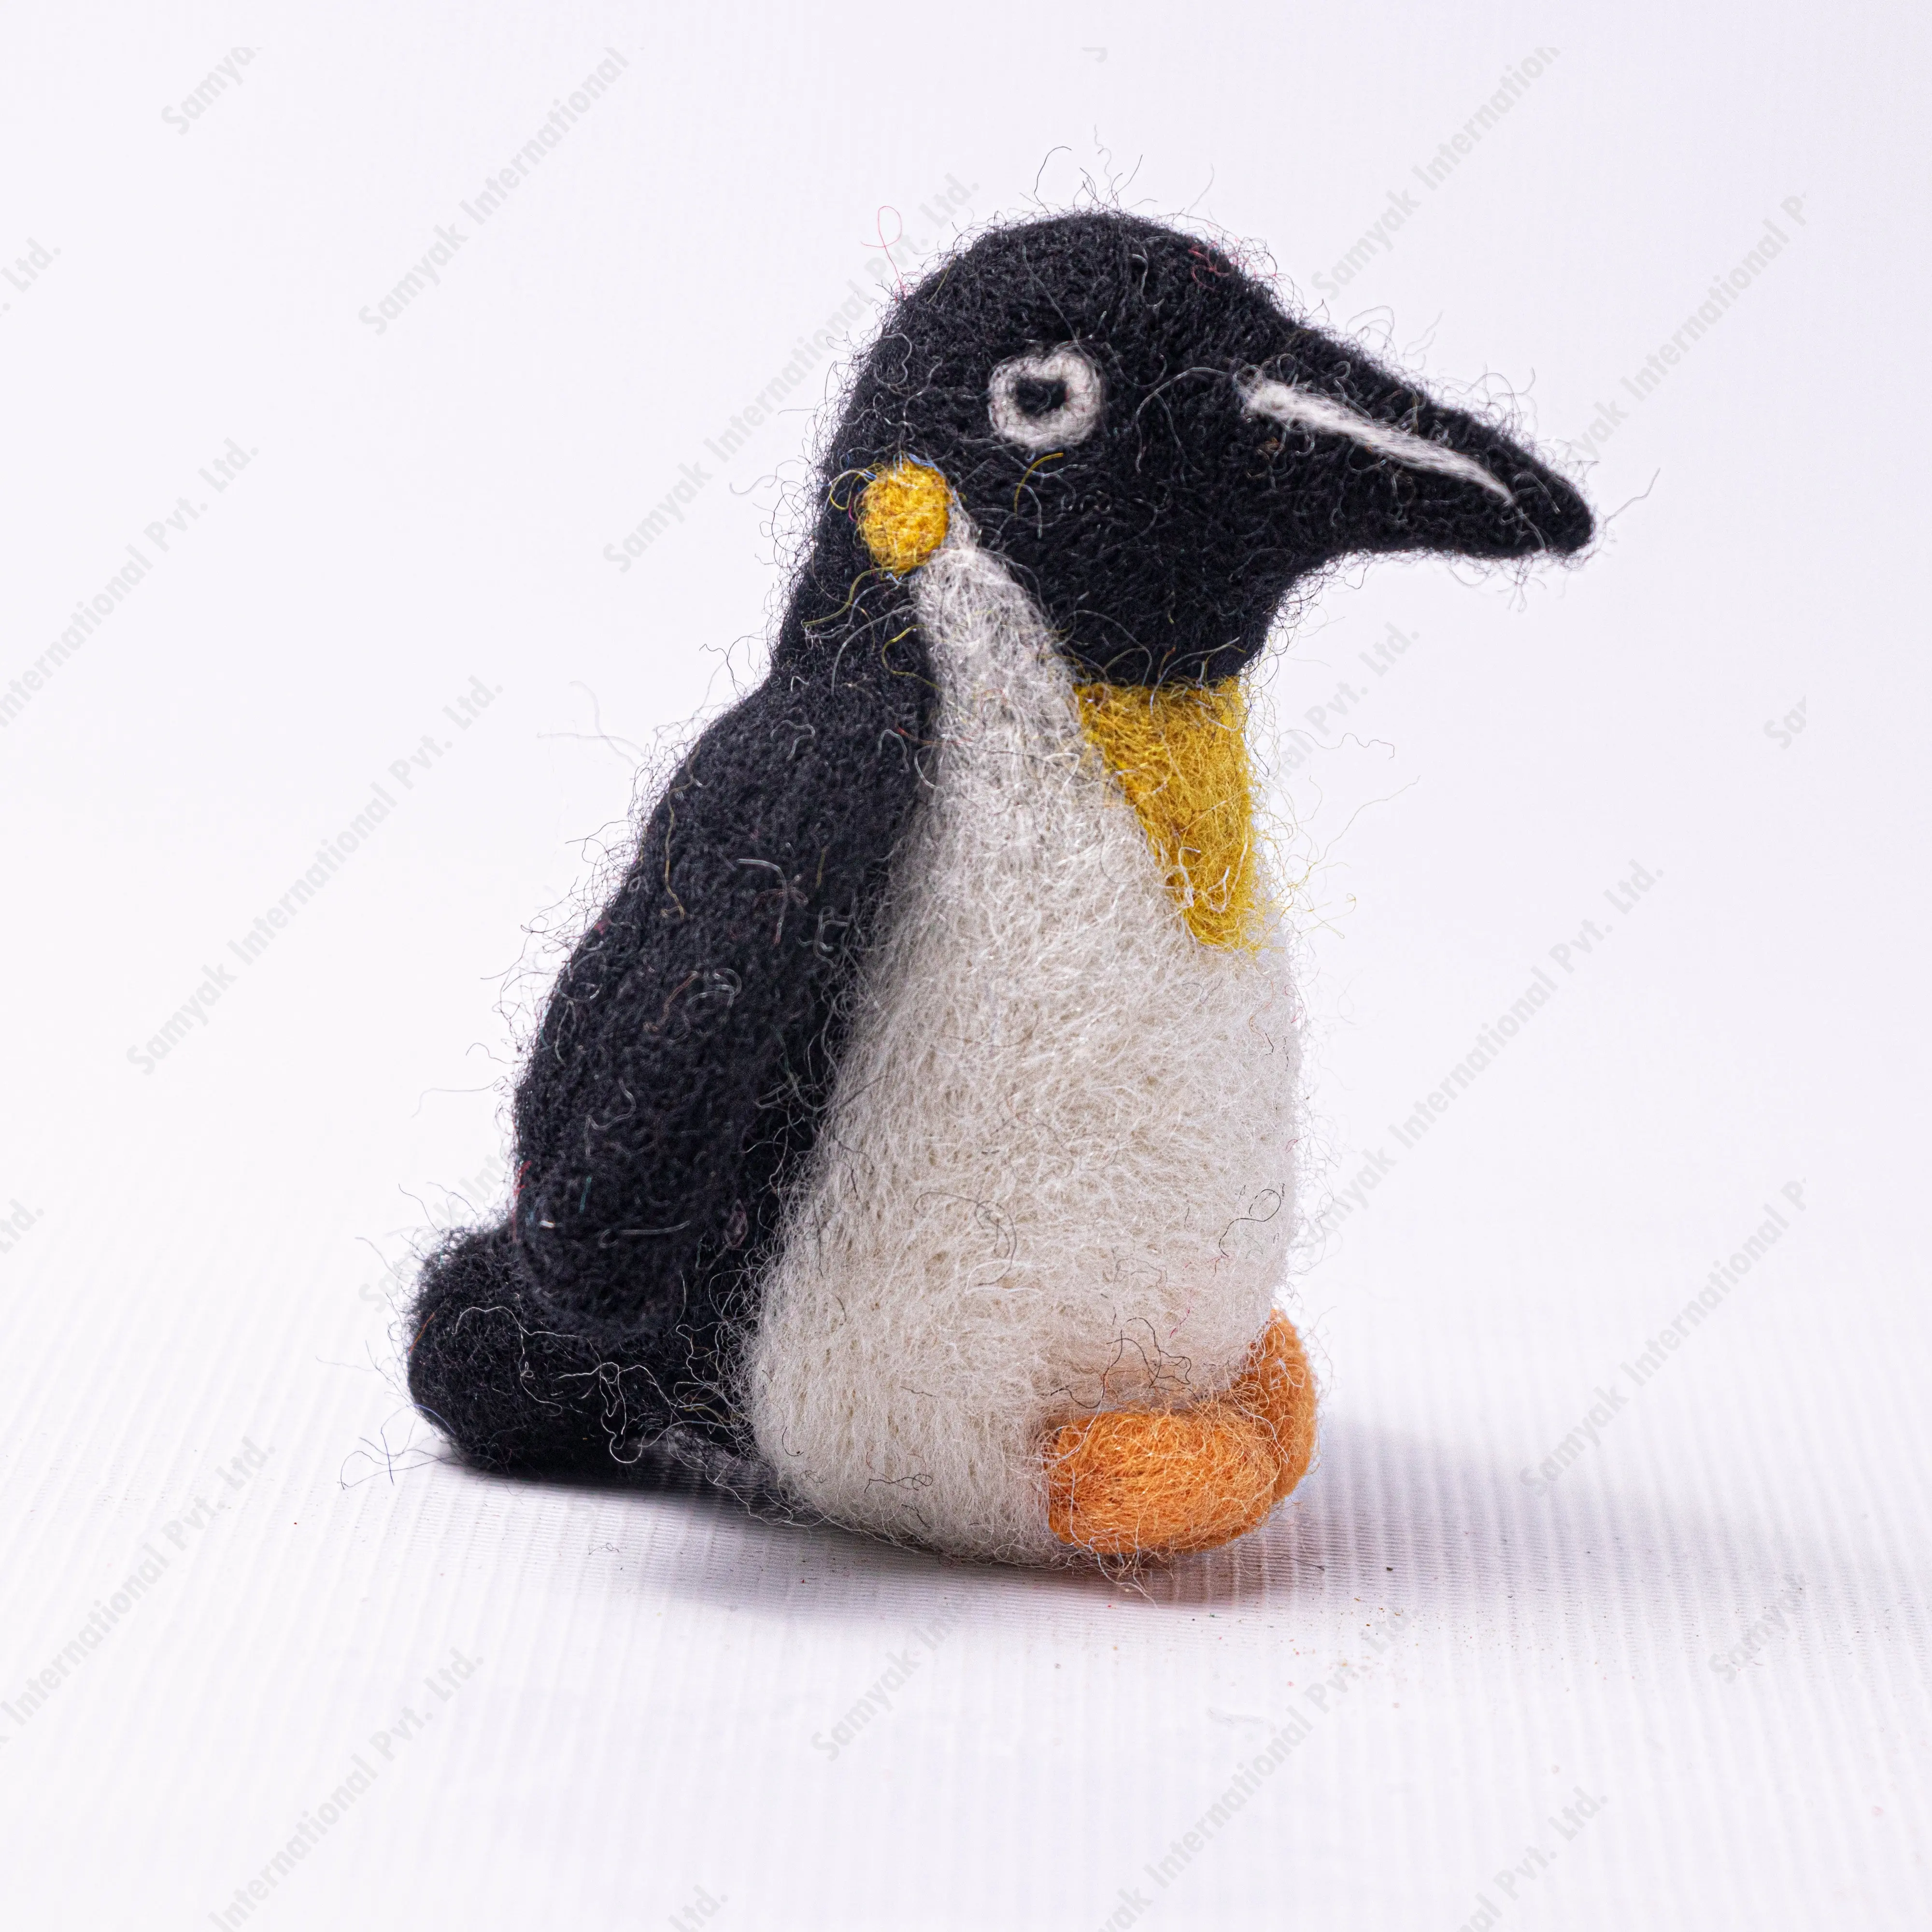 Figura de pingüino de fieltro más vendida para decoraciones y juguetes educativos, muñecas para niños, producto hecho a mano de lana